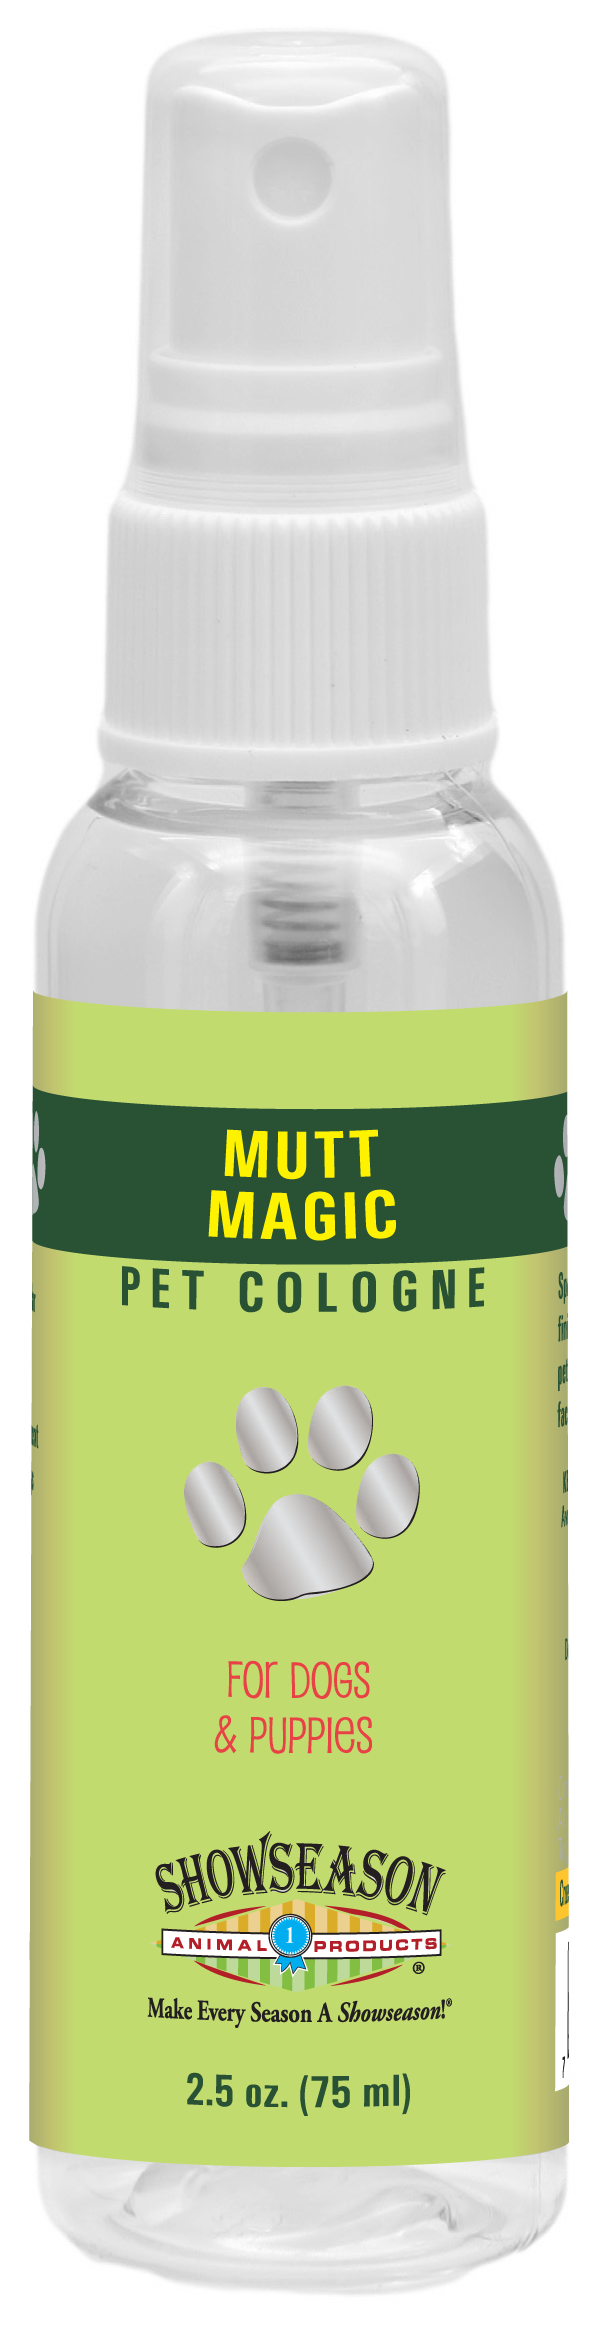 Mutt Magic Pet Cologne | Showseason®